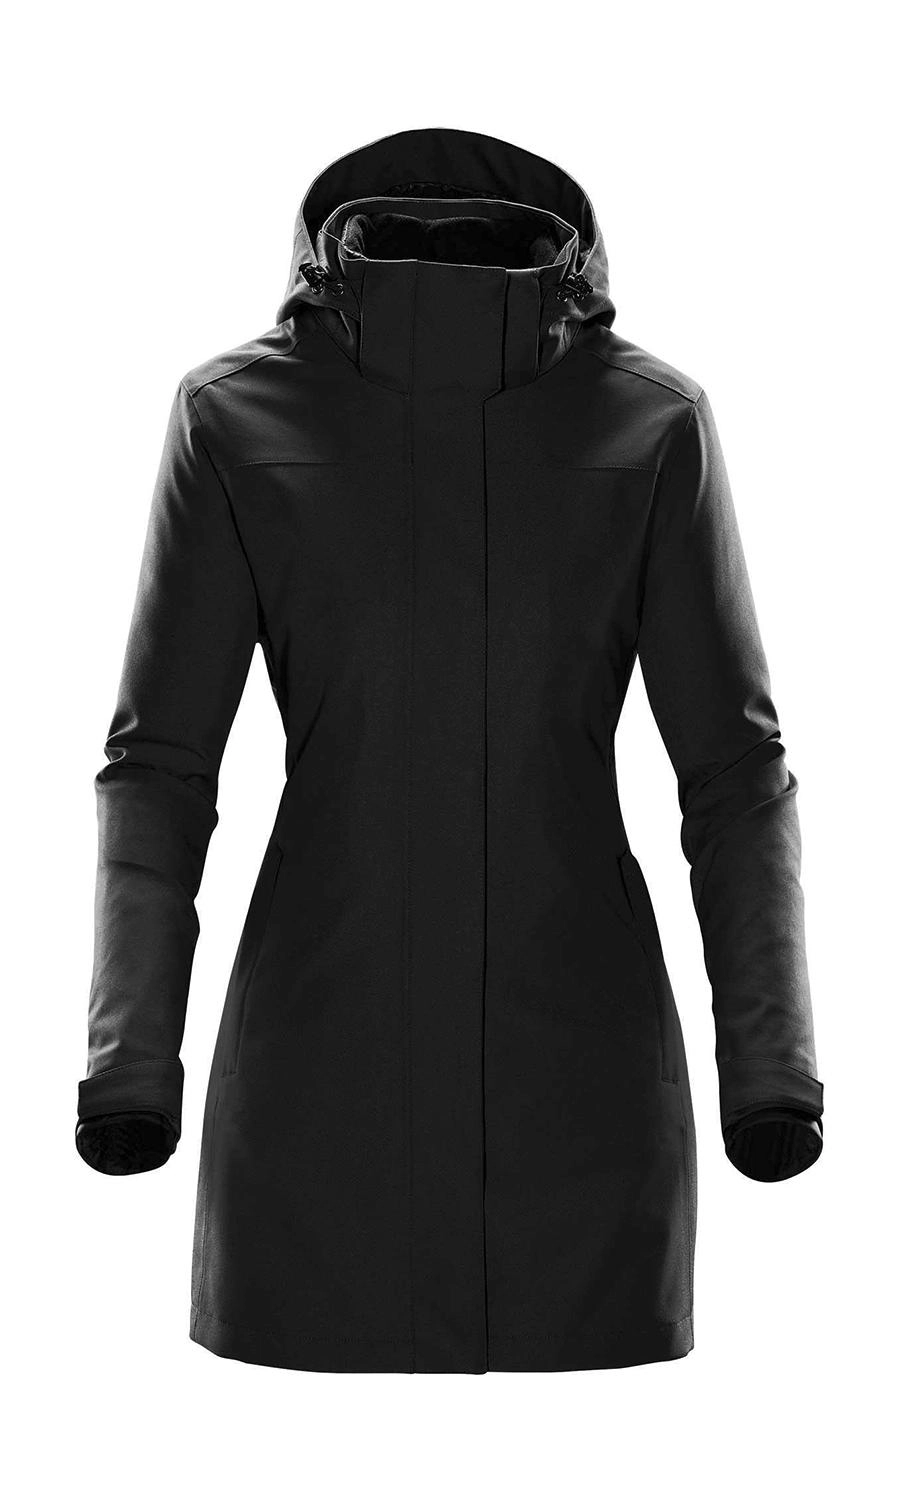 Women`s Avalanche System Jacket zum Besticken und Bedrucken in der Farbe Black mit Ihren Logo, Schriftzug oder Motiv.